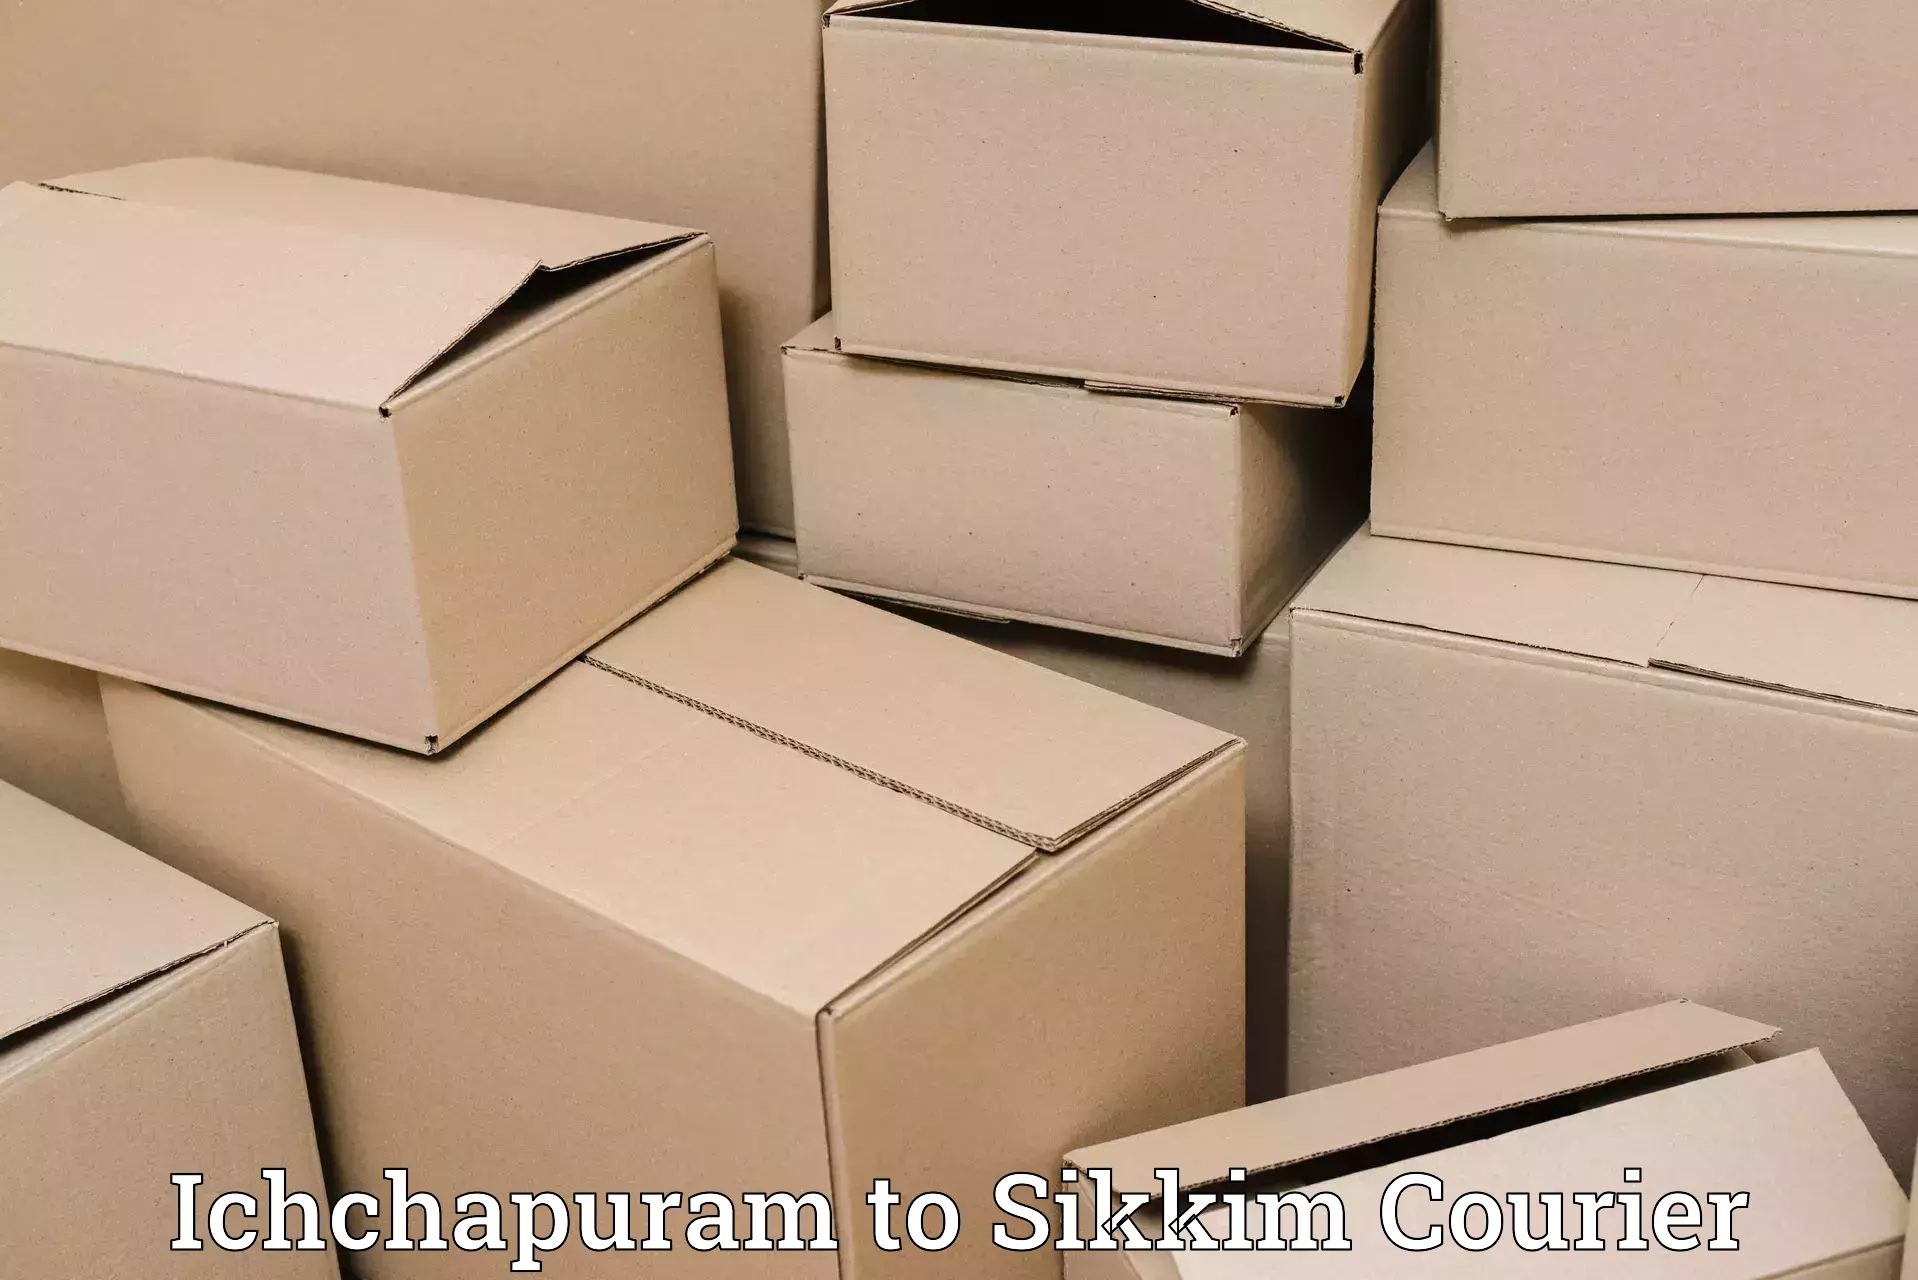 Digital courier platforms Ichchapuram to Pelling